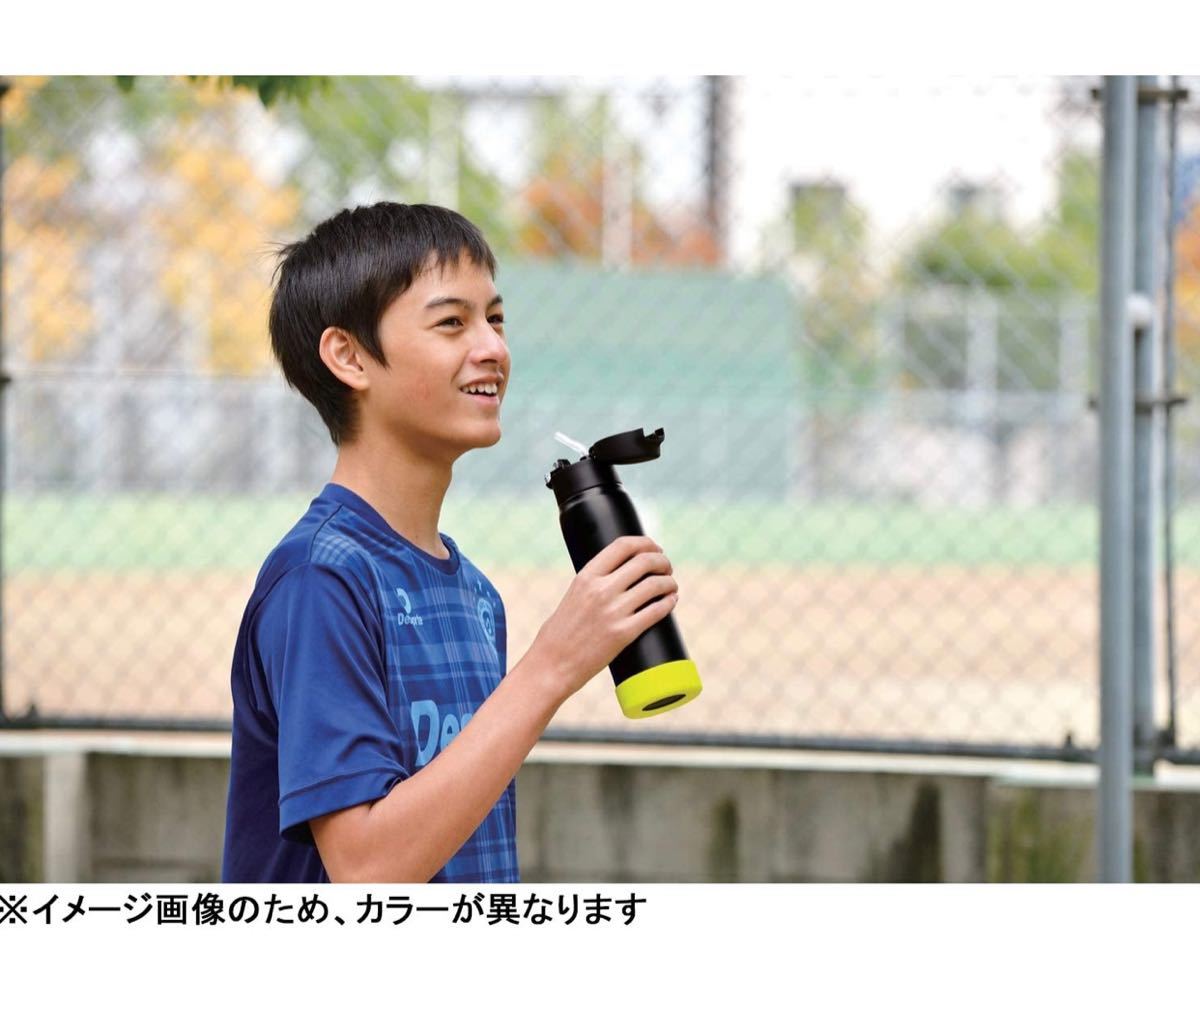 【新品】ピーコック 水筒 スポーツドリンク 対応 ステンレスボトル ストロータイプ 0.68L サーモンピンク APA-R70 